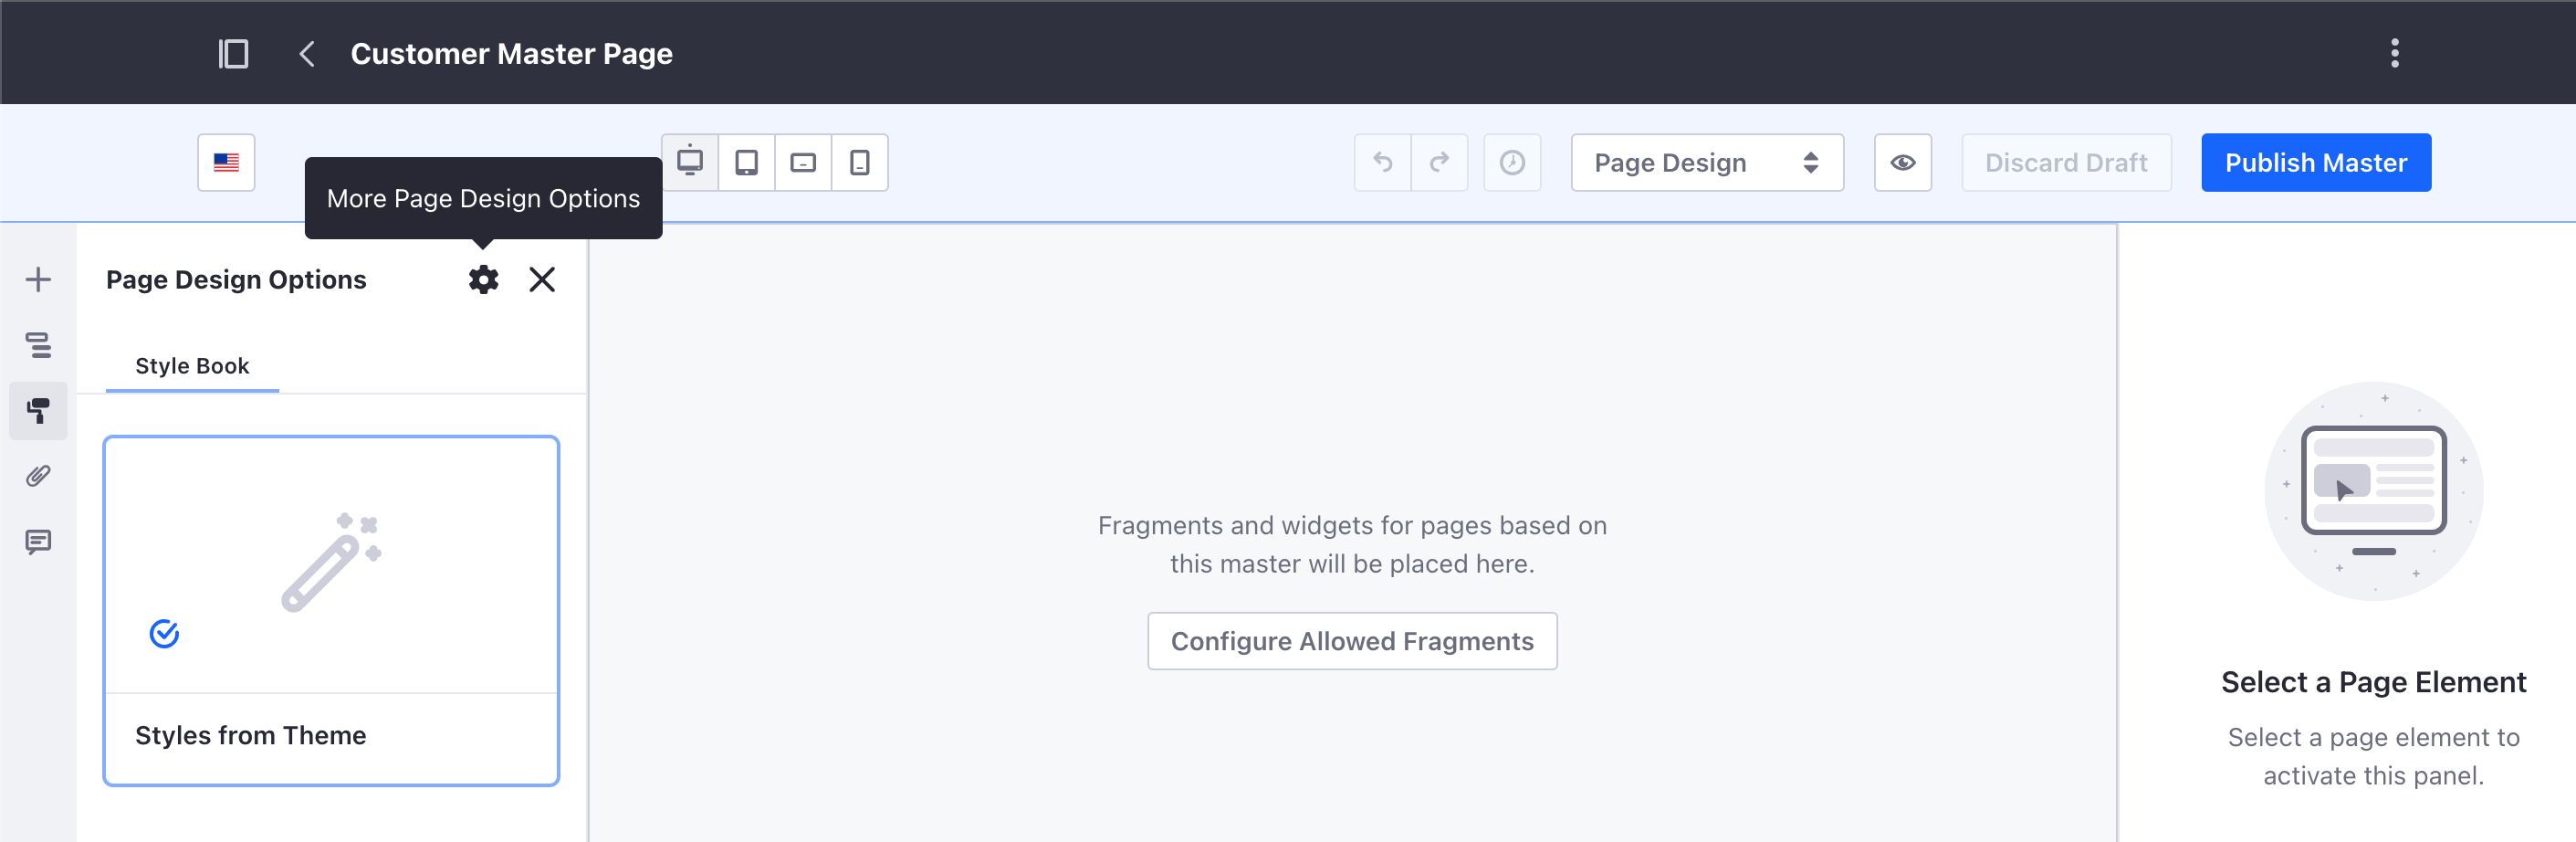 その他のページデザインオプションをクリックして、マスターページテンプレートの一般オプションにアクセスします。